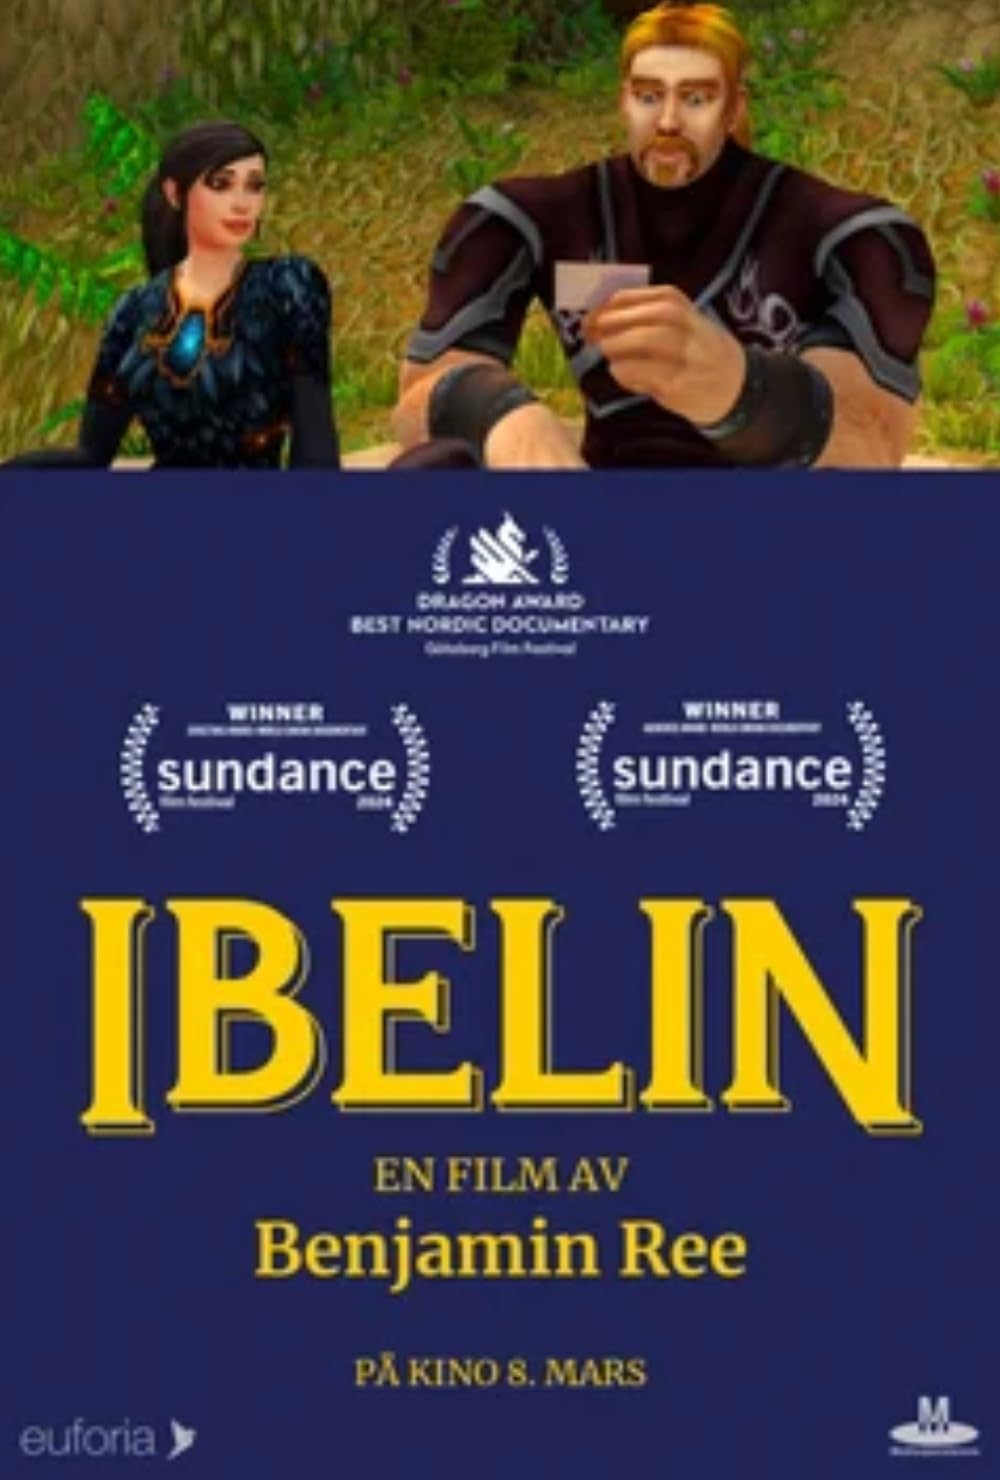 OTR International Film Festival Presents Ibelin